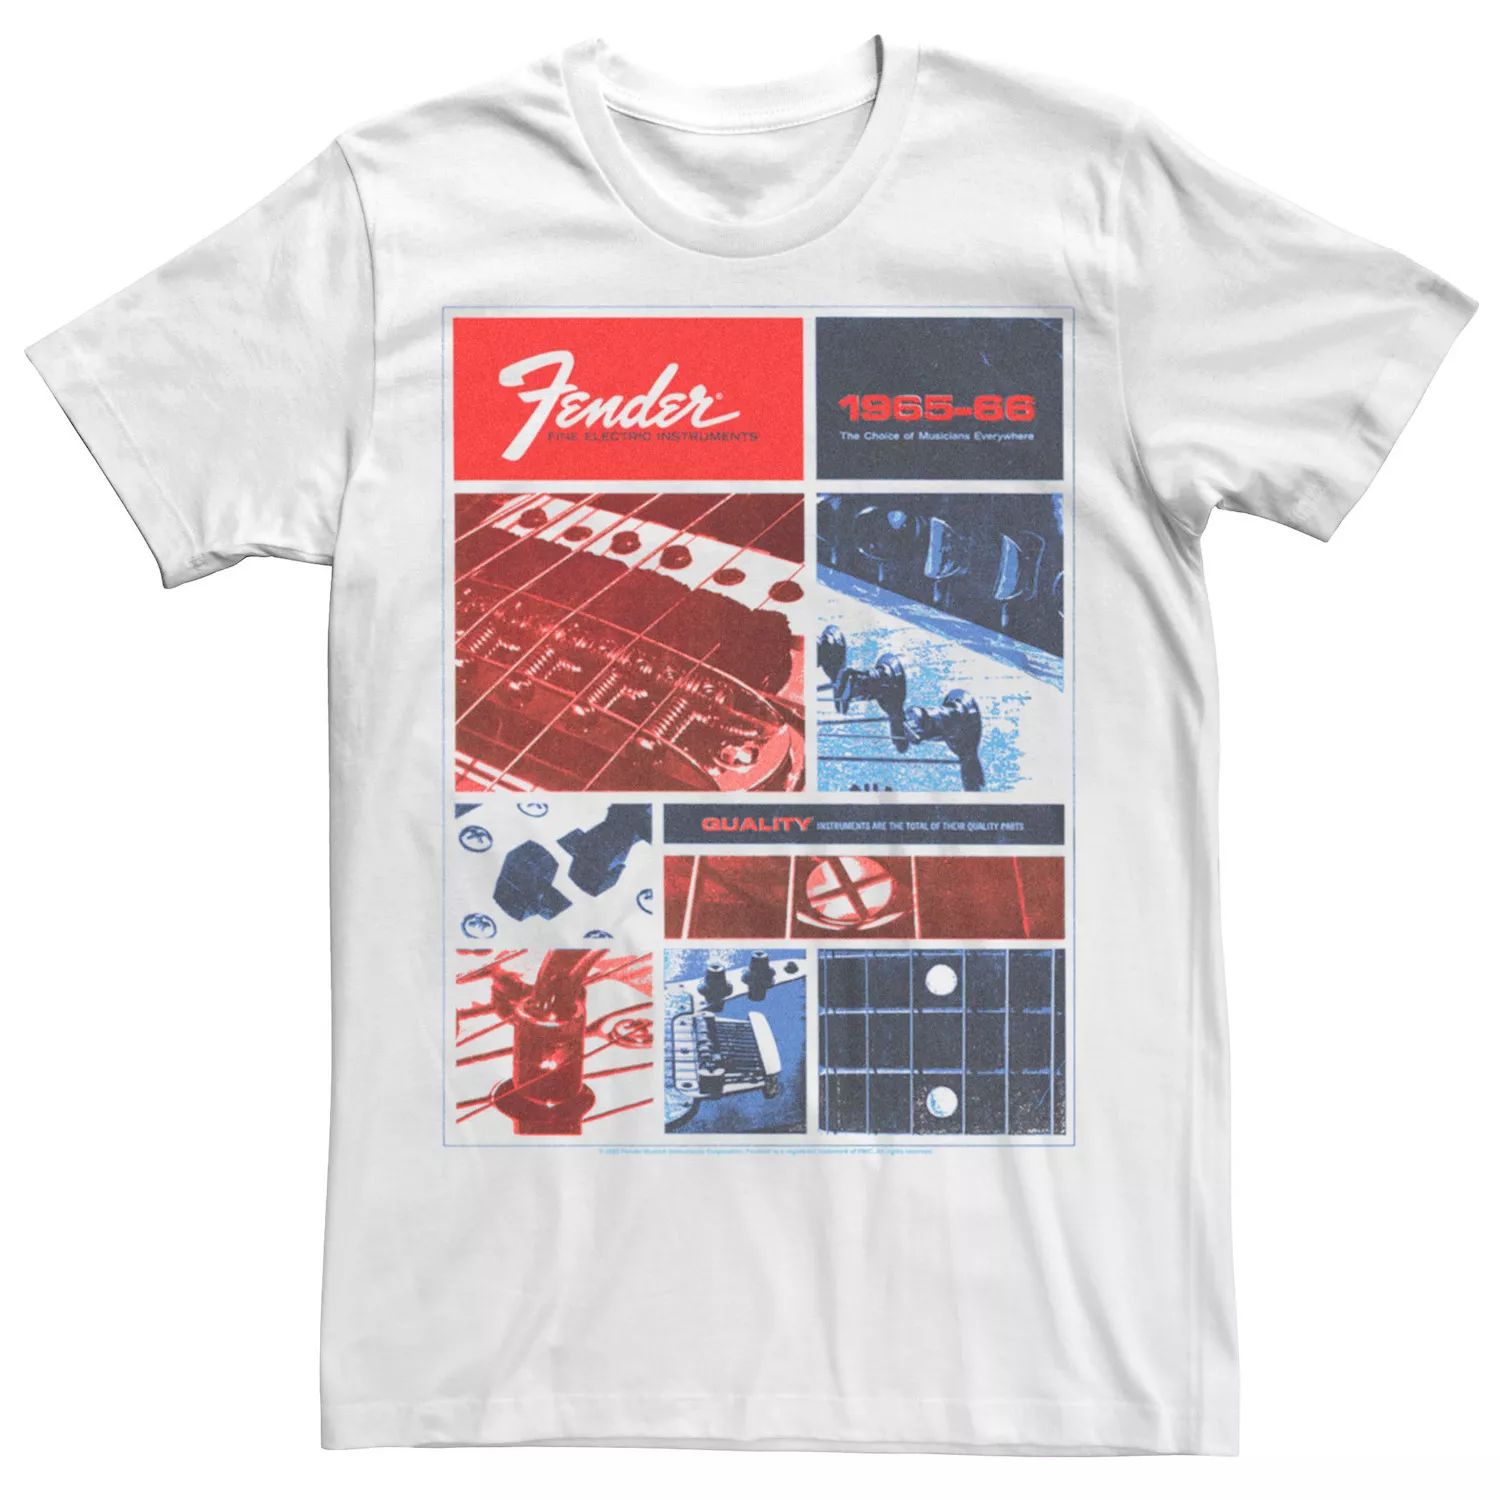 Мужская красно-бело-синяя футболка Fender с винтажной рекламной графикой Licensed Character